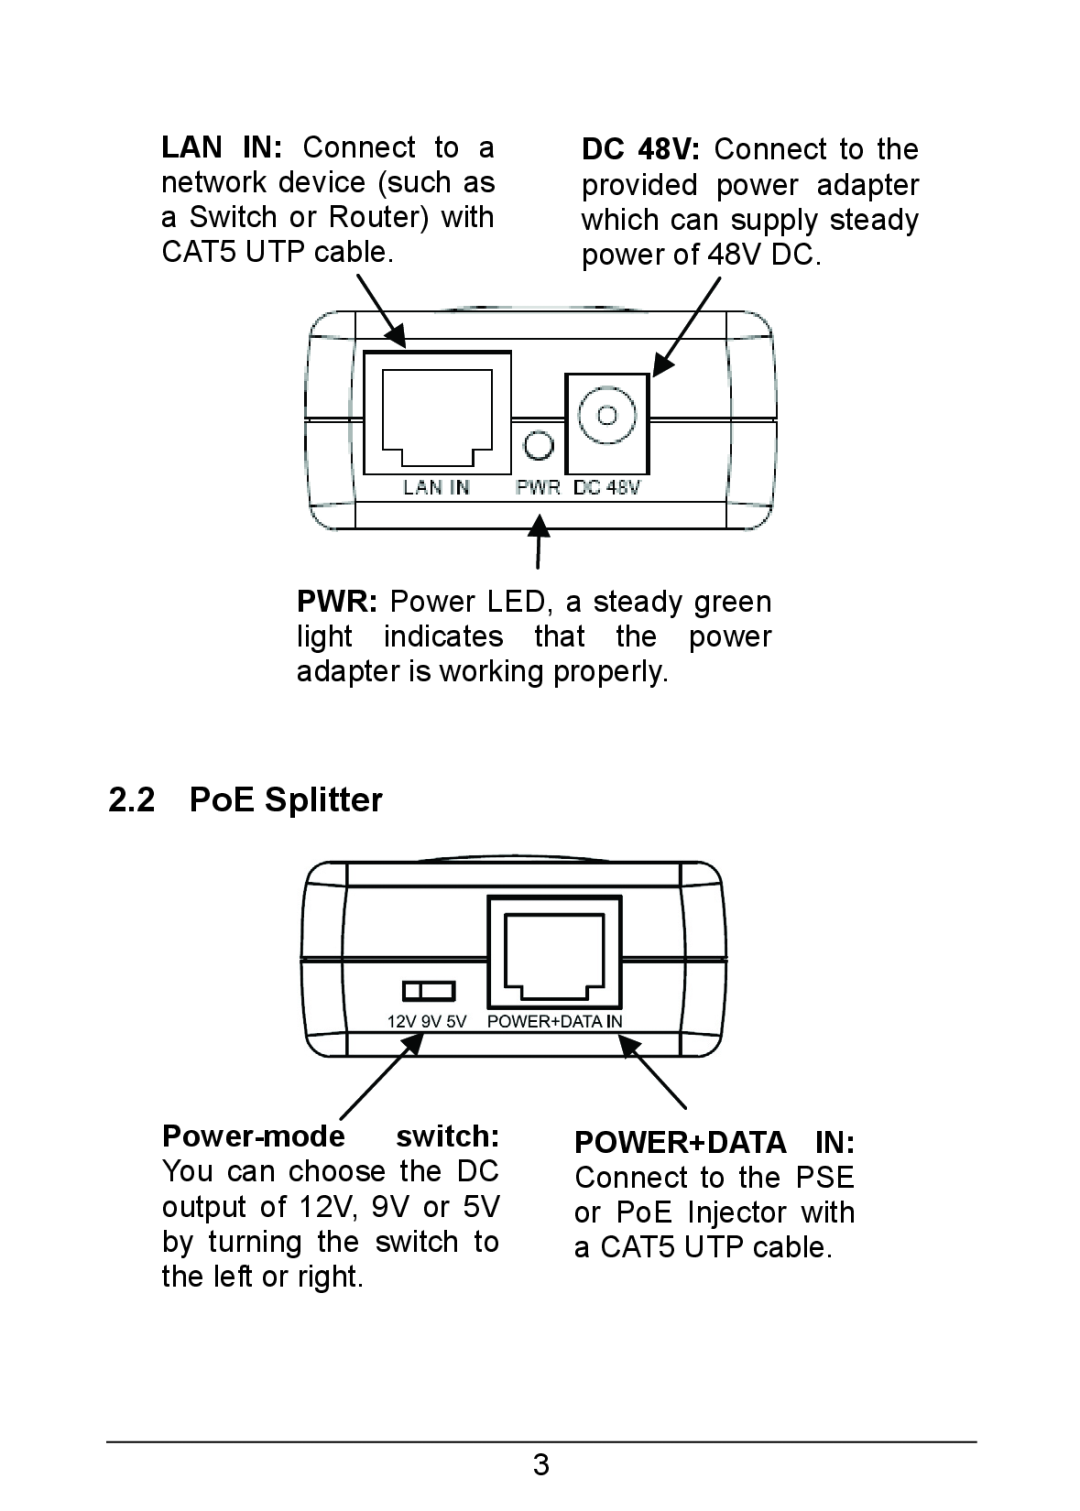 TP-Link TL-POE200 manual PoE Splitter 